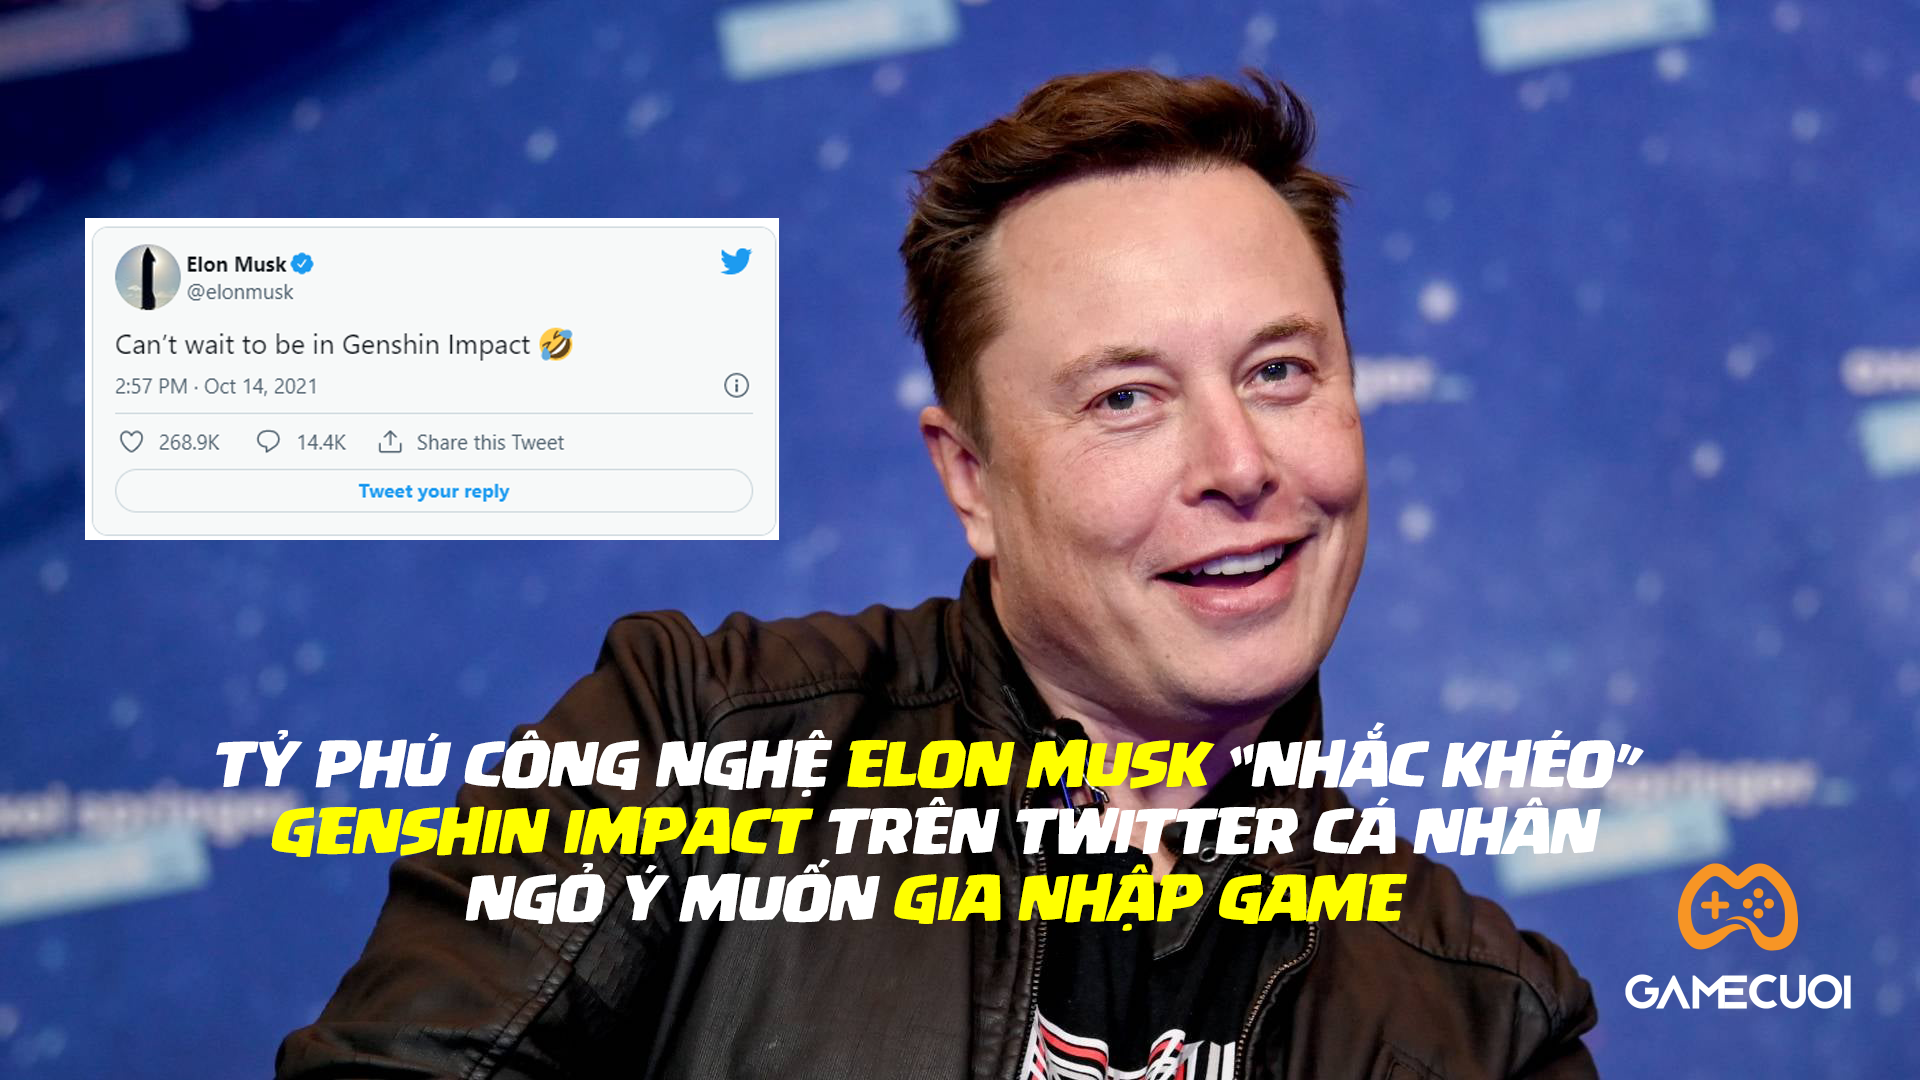 Elon Musk lộ dấu hiệu lọt hố vôi “Genshin Impact”, ngỏ ý muốn gia nhập game trên Twitter